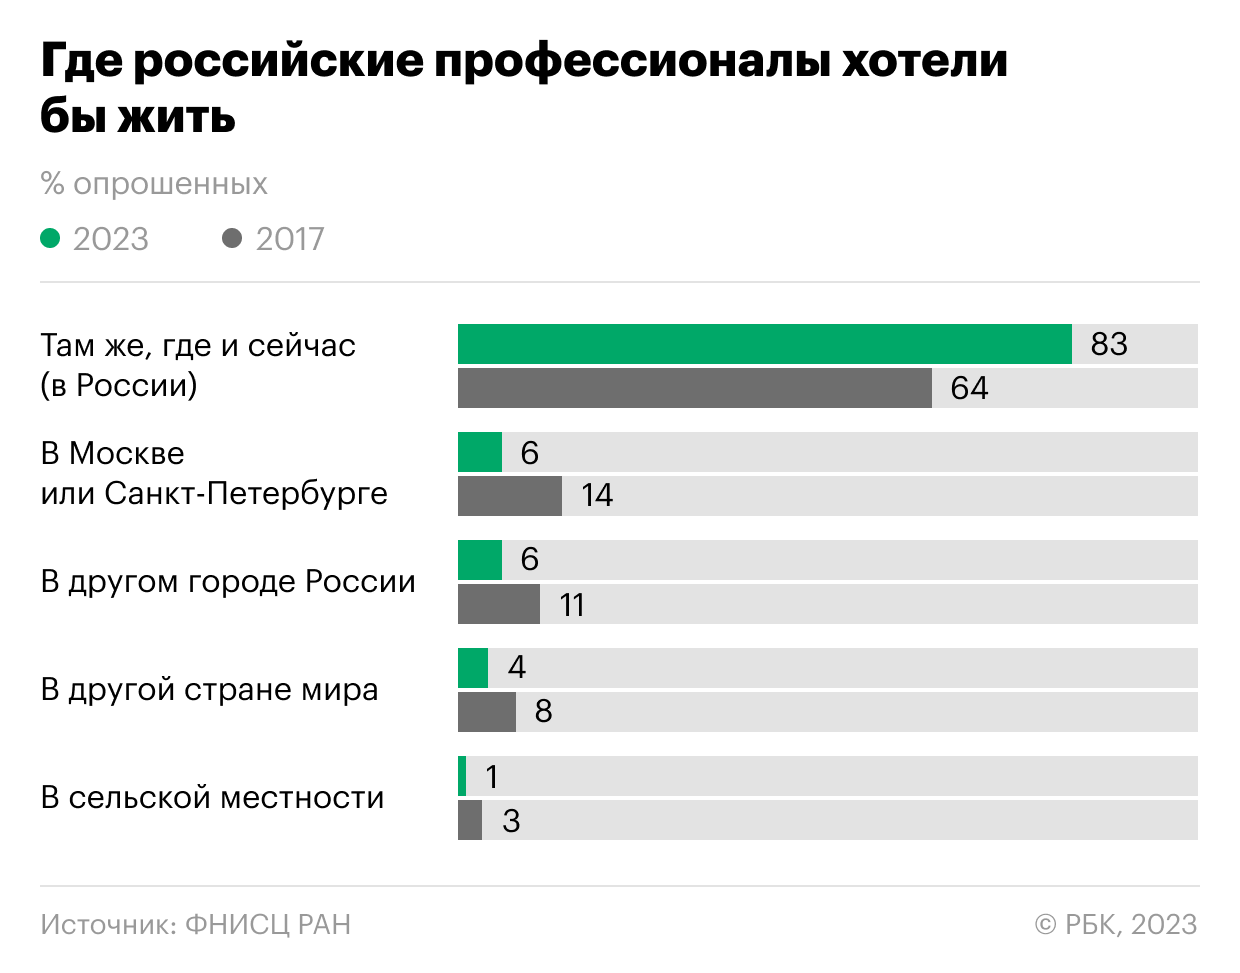 Где хотели бы жить российские работники. Инфографика